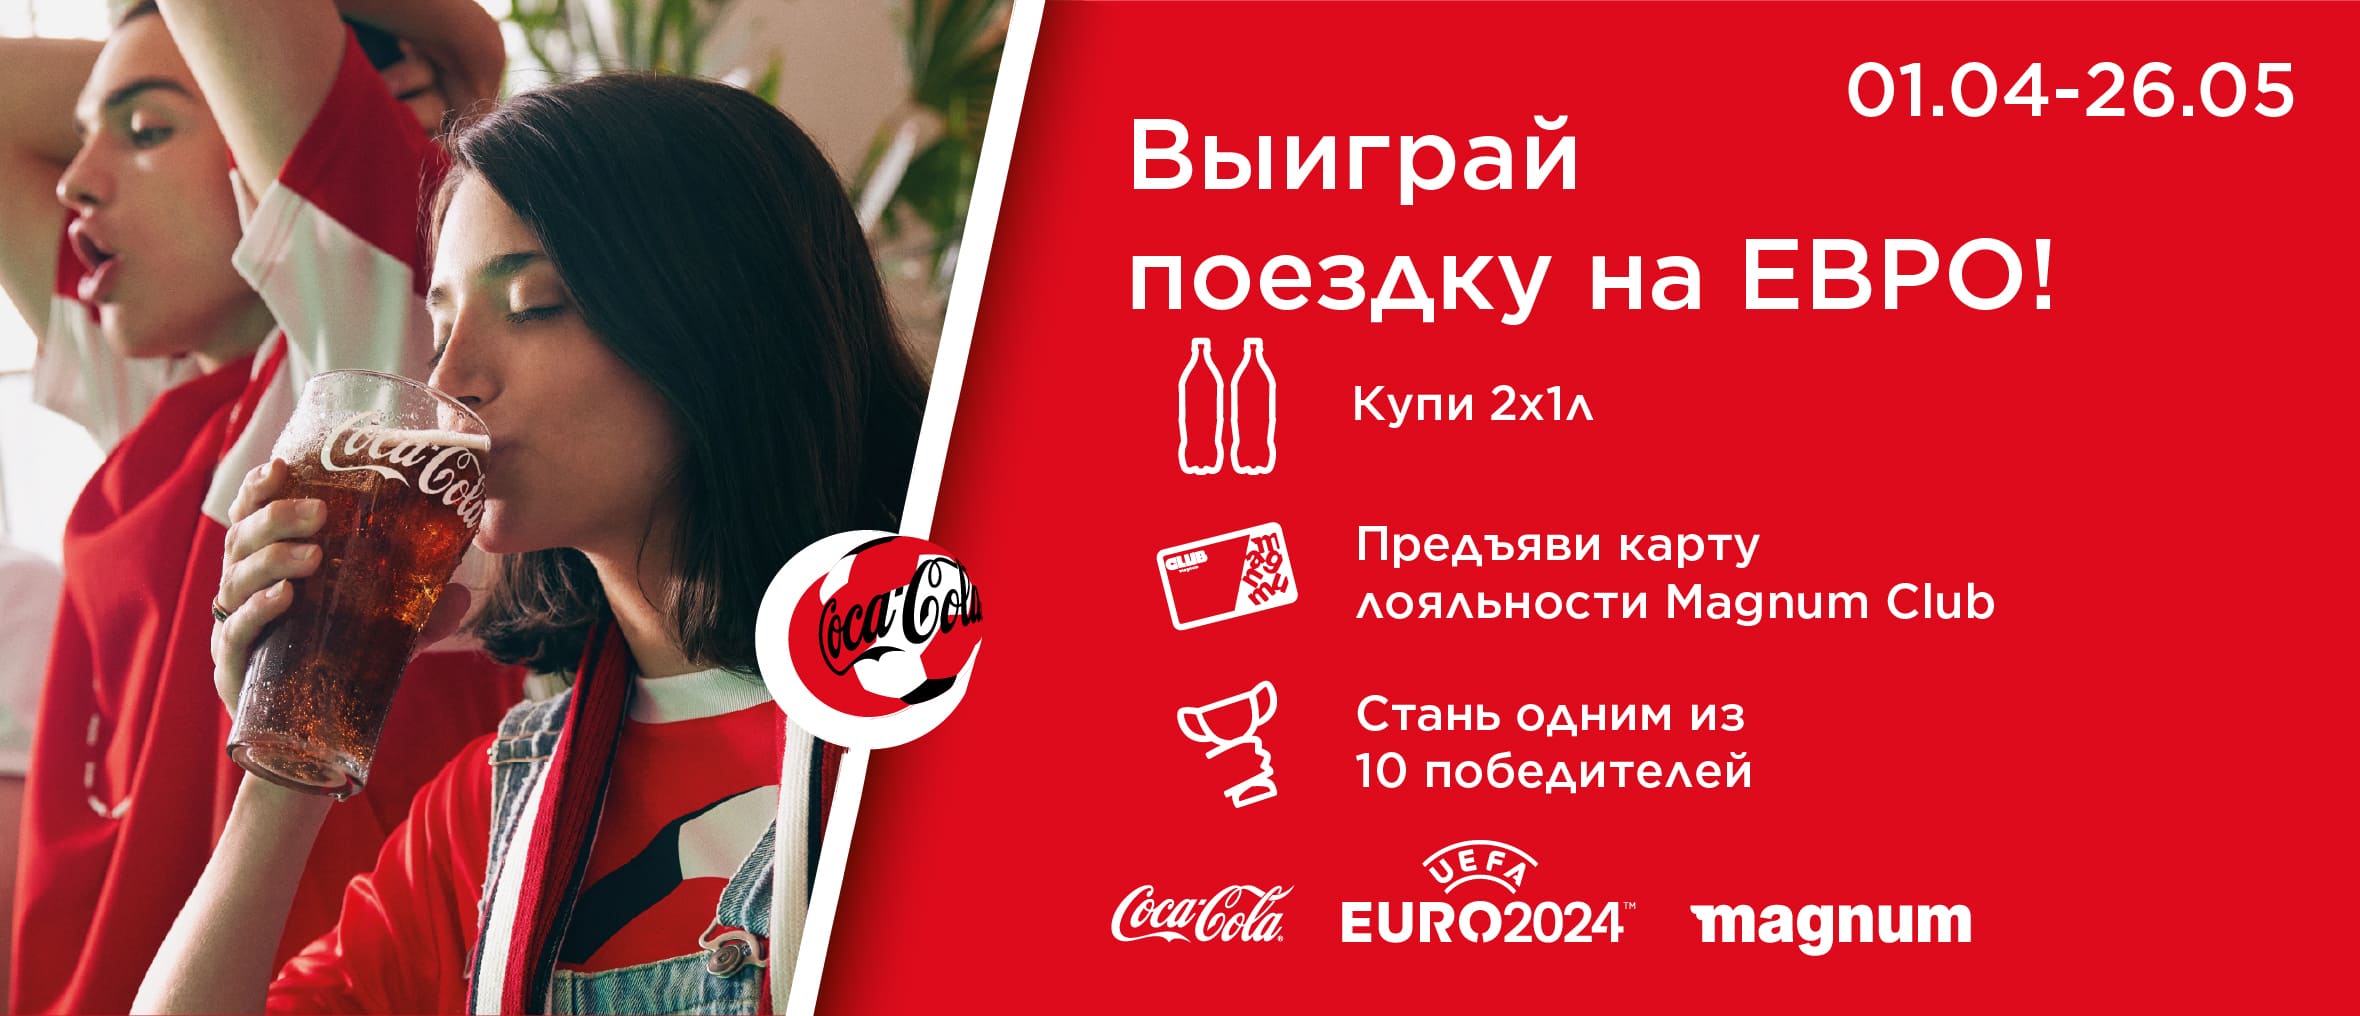 Акция кока-кола Евро 2024